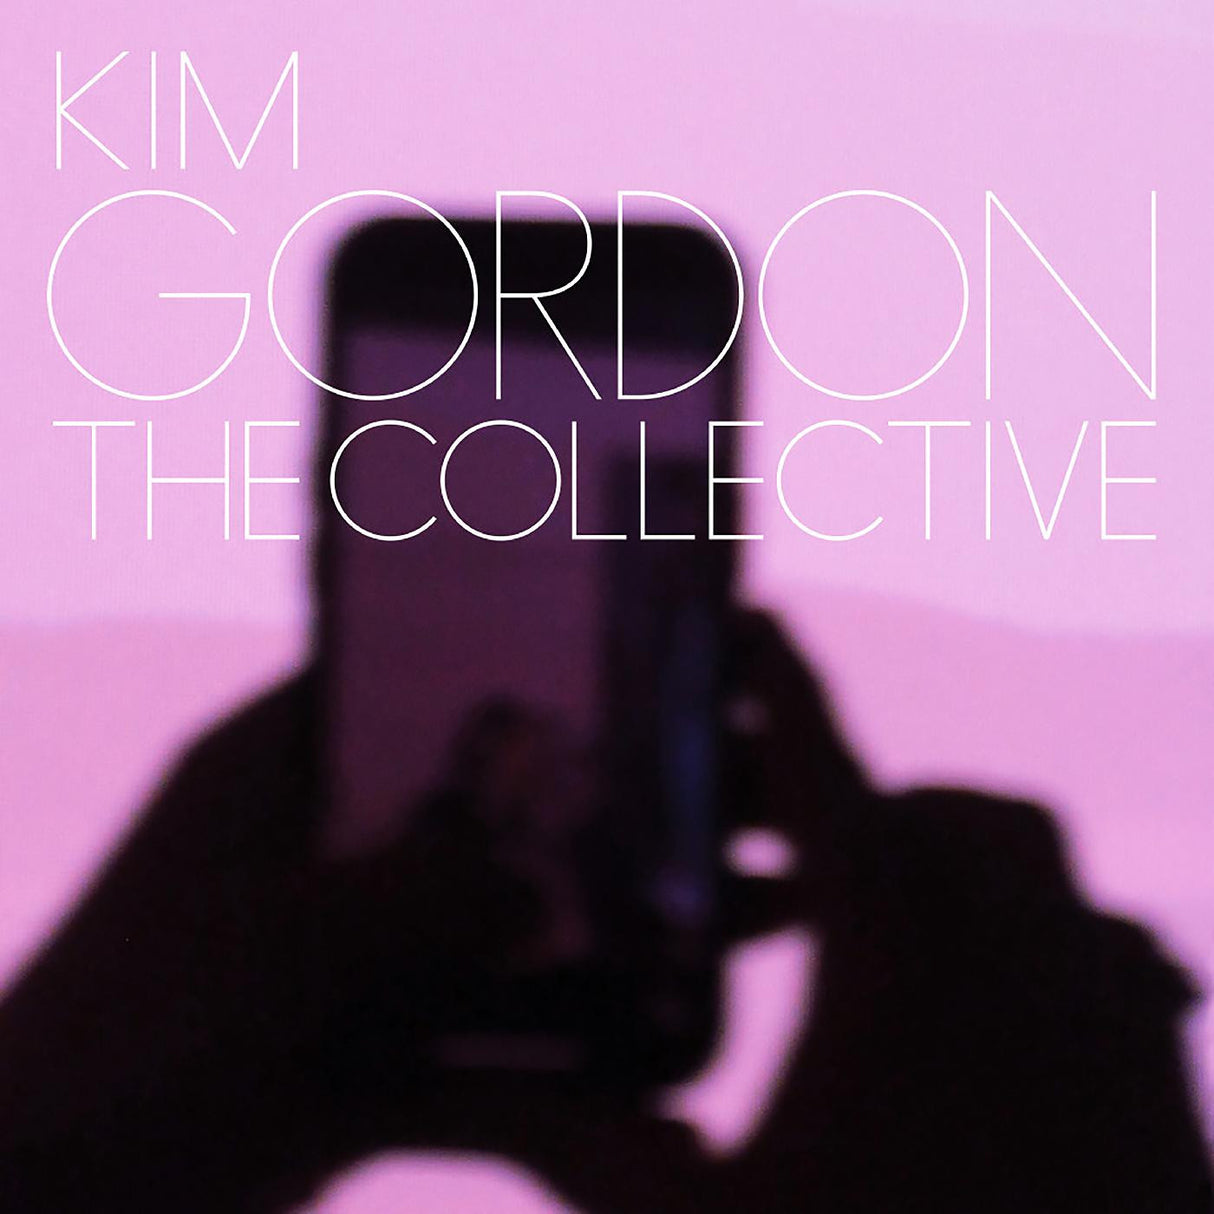 Kim Gordon - The Collective [Vinyl]